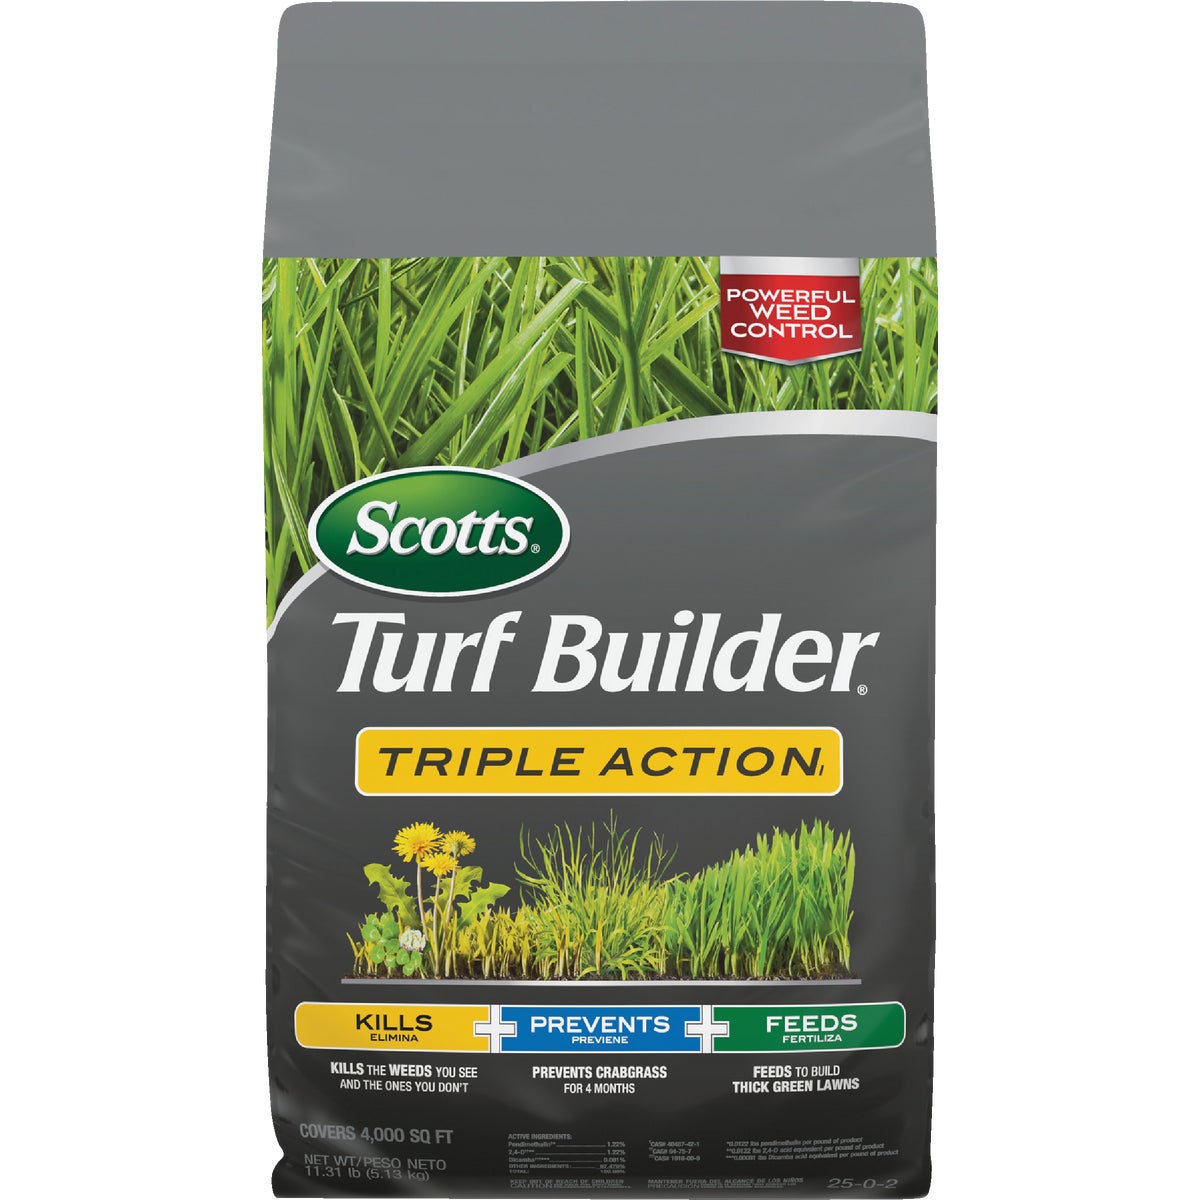 Turf Builder Triple Action 11.31 Lb. 4000 Sq. Ft. Weed Killer Plus Lawn Fertilizer